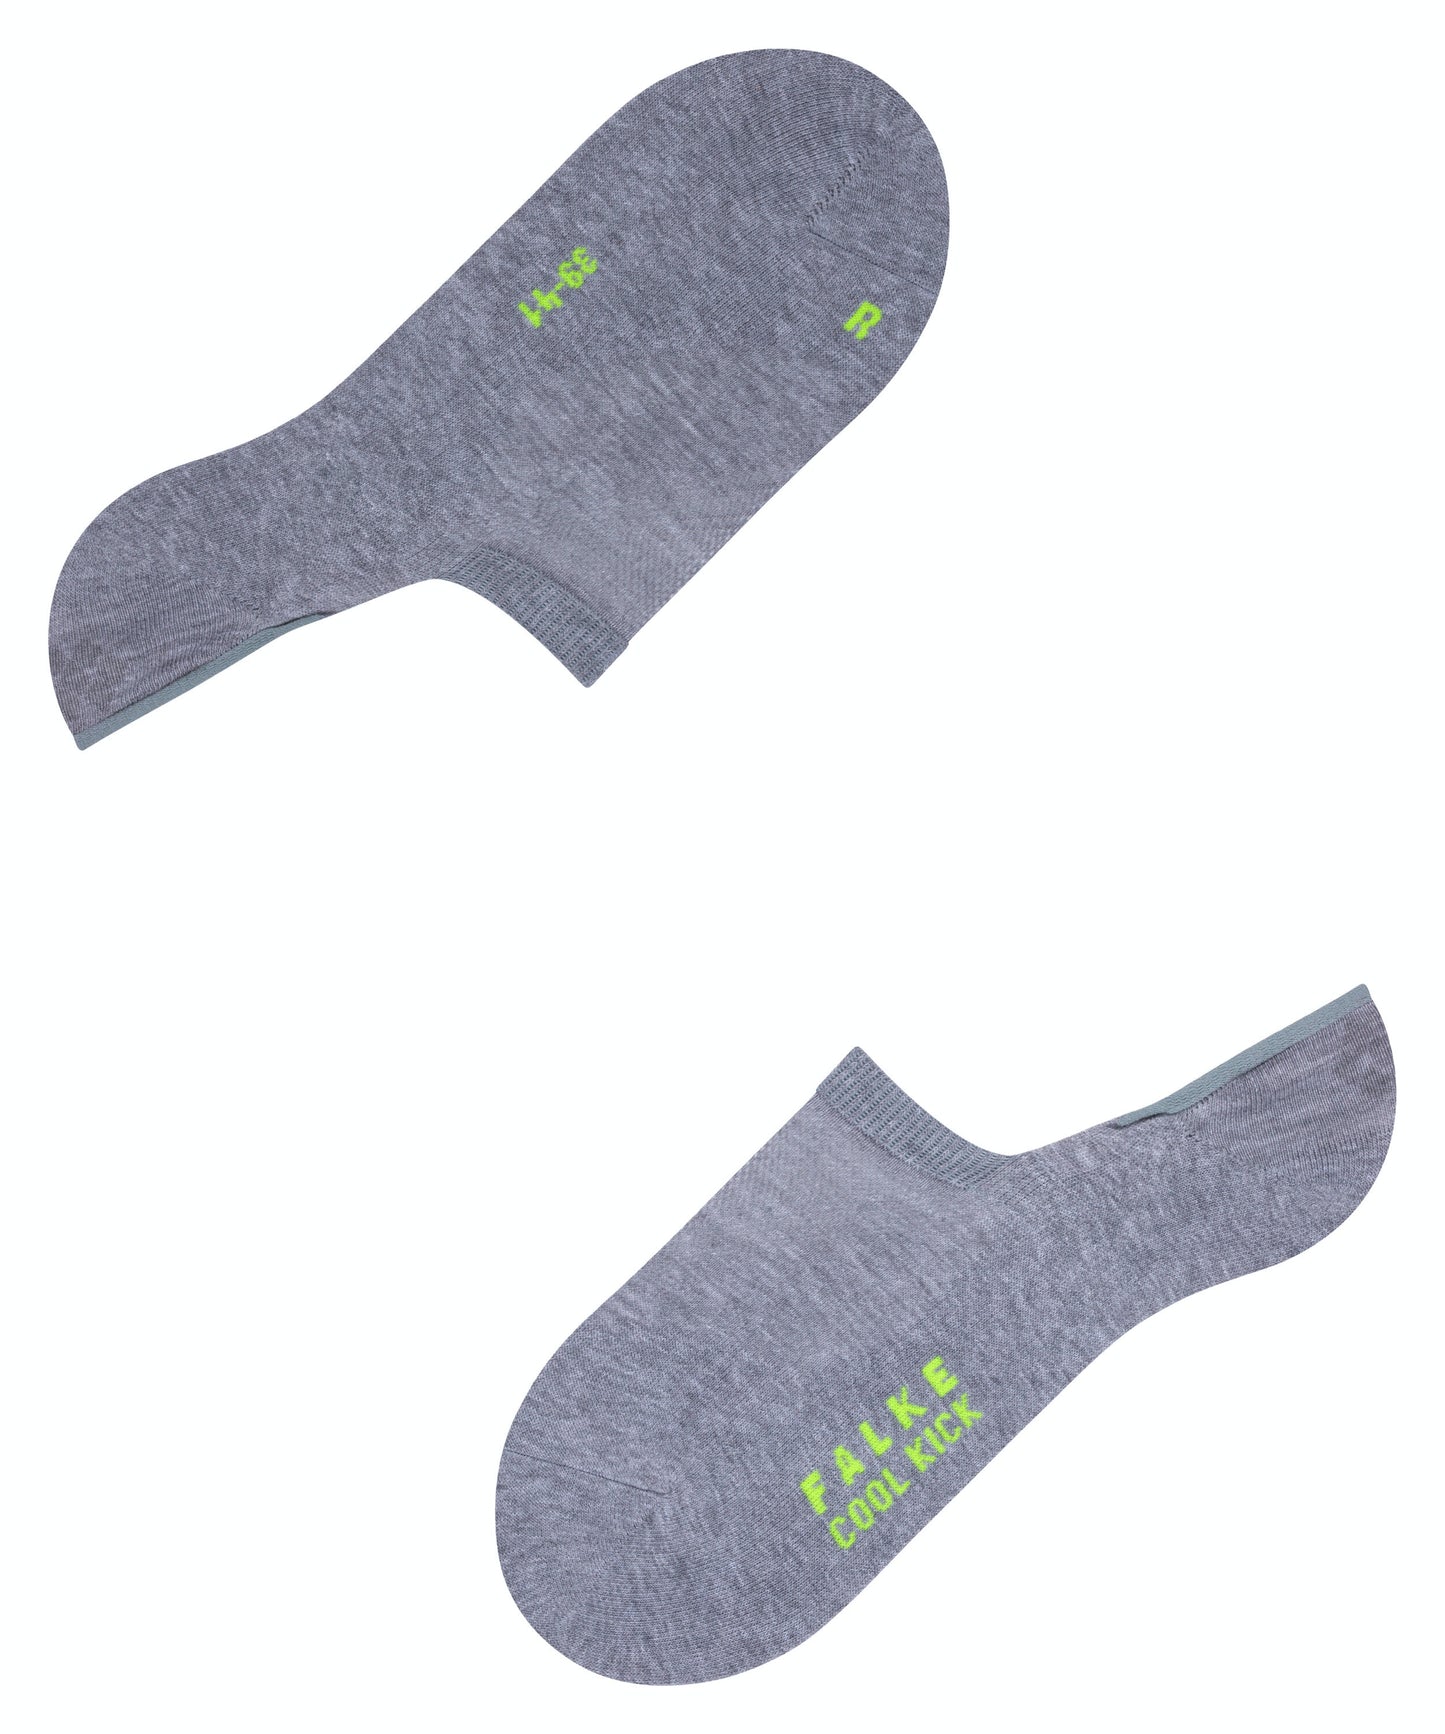 FALKE COOL KICK Invisible Socks in Light Grey